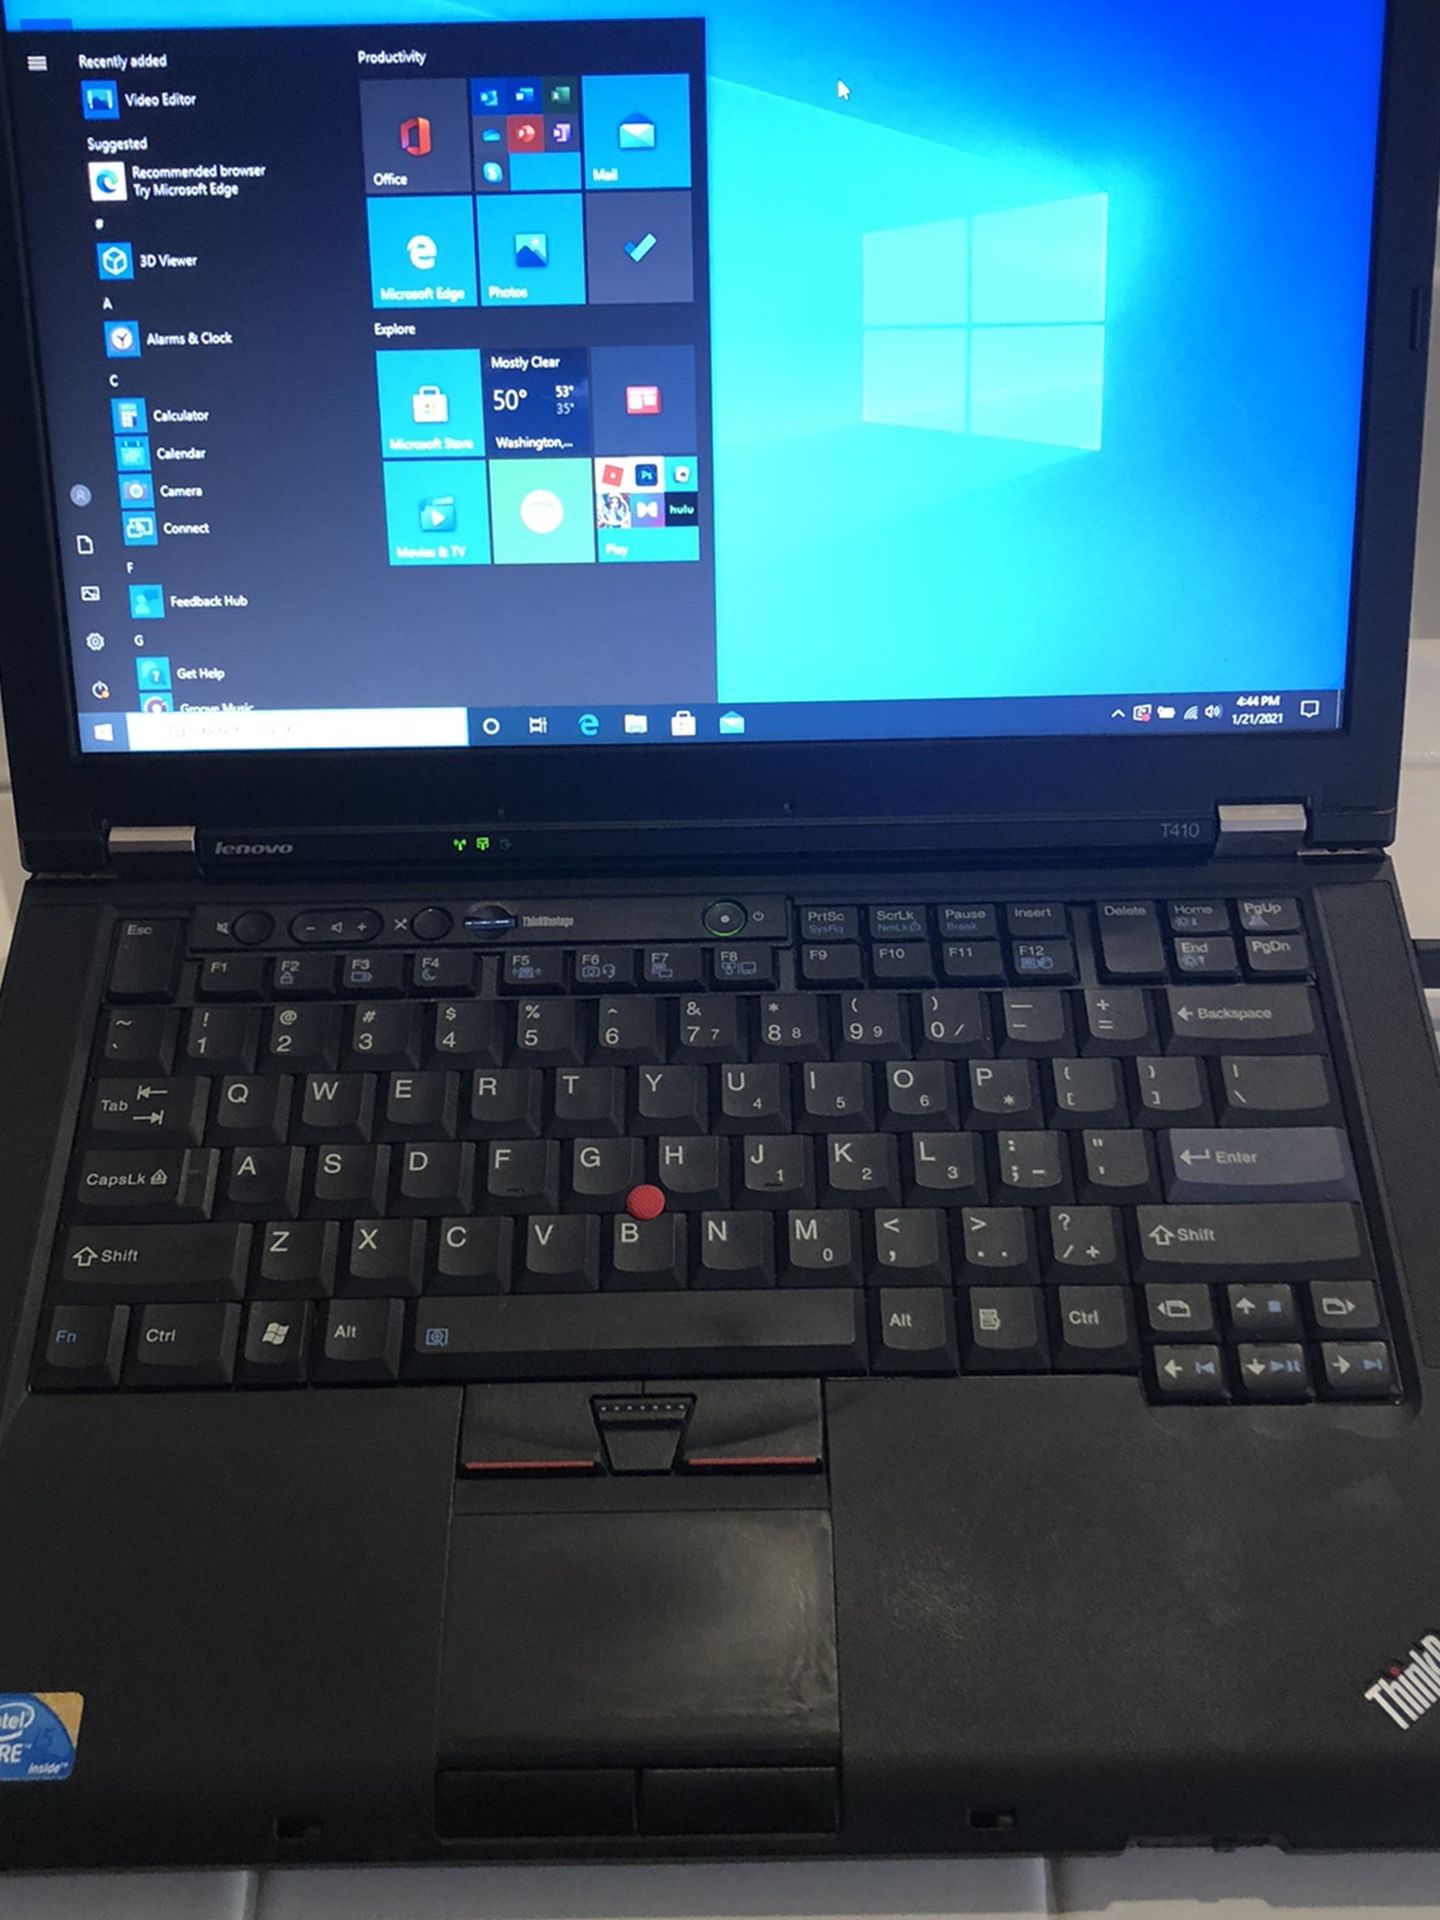 14” Lenovo Thinkpad T410 laptop with extra battery